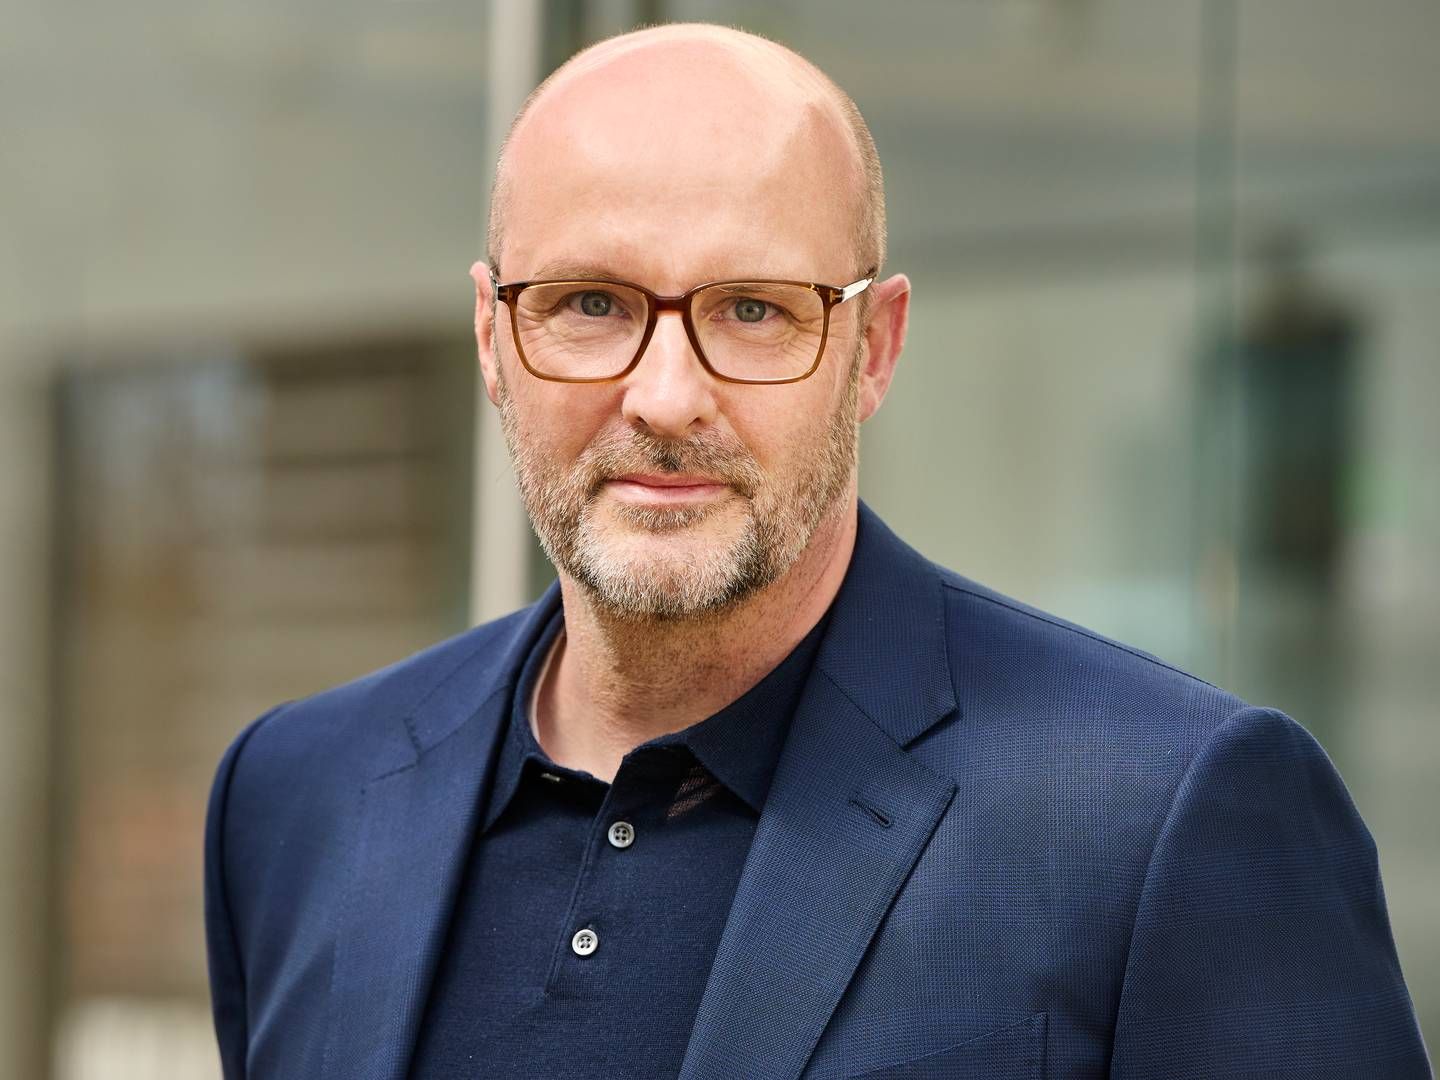 Efter to års ventetid er Lars Mørch blevet blåstemplet af Finanstilsynet som ny topchef i Jyske Bank. | Foto: Jyske Bank/pr